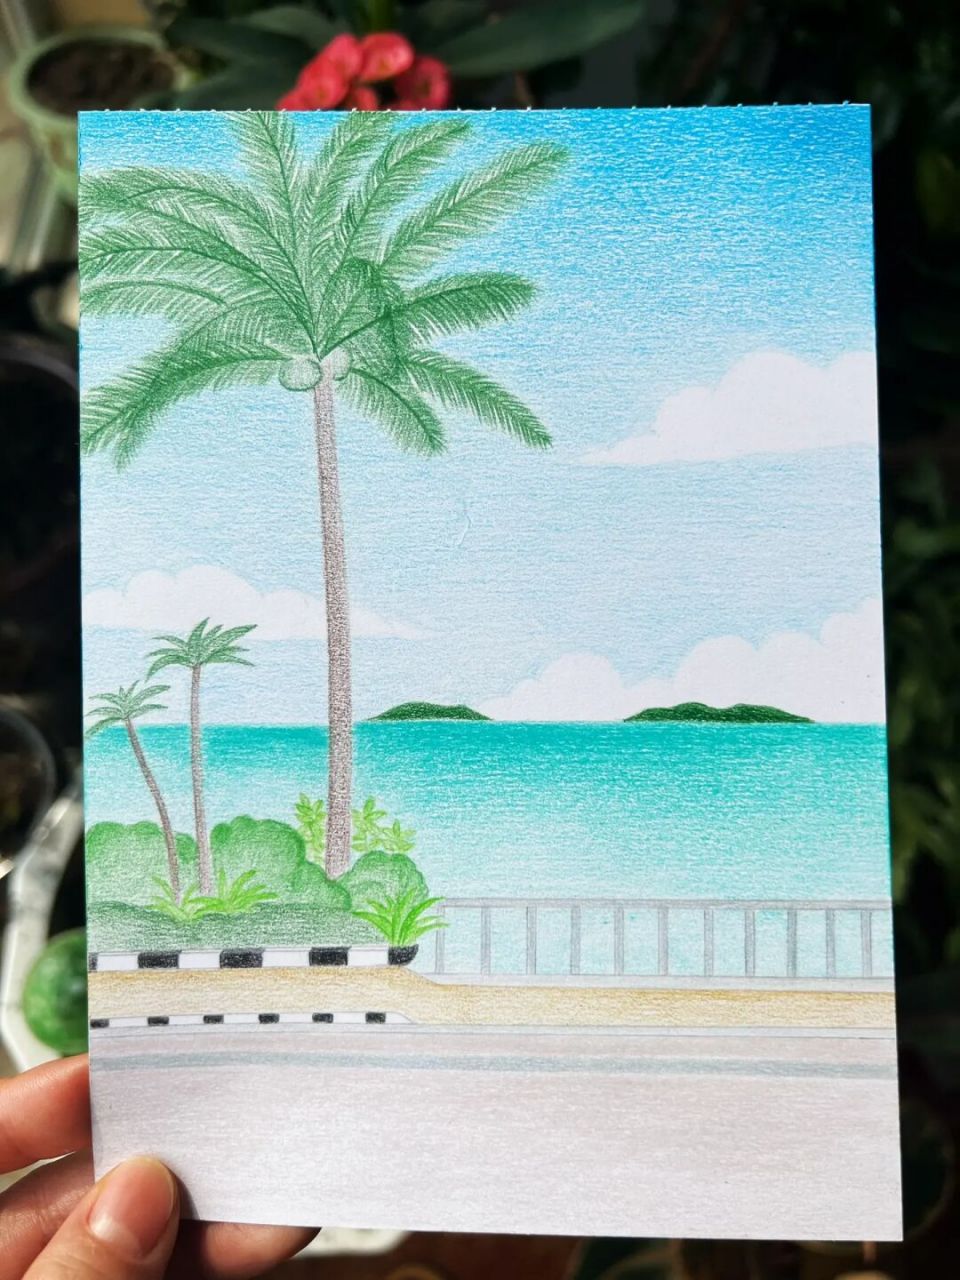 彩铅画简单风景海边图片